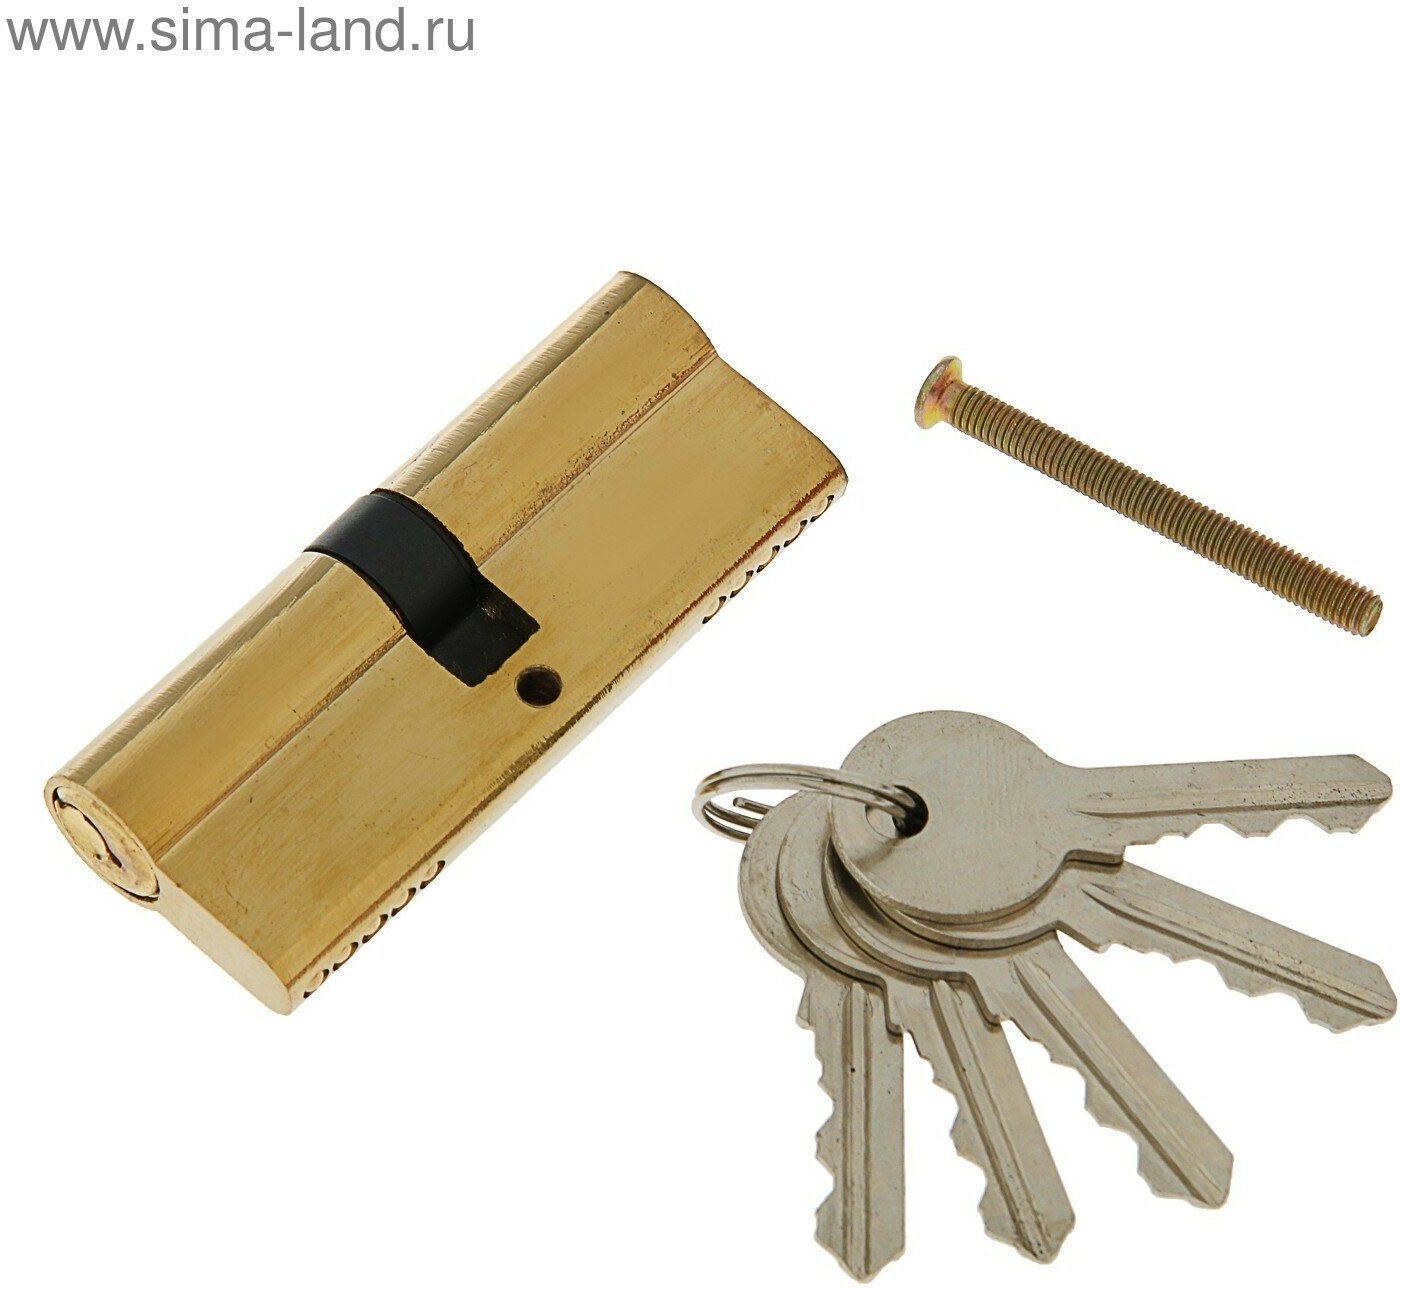 Цилиндровый механизм, 80 мм, английский ключ, 5 ключей, цвет золото (1шт.)